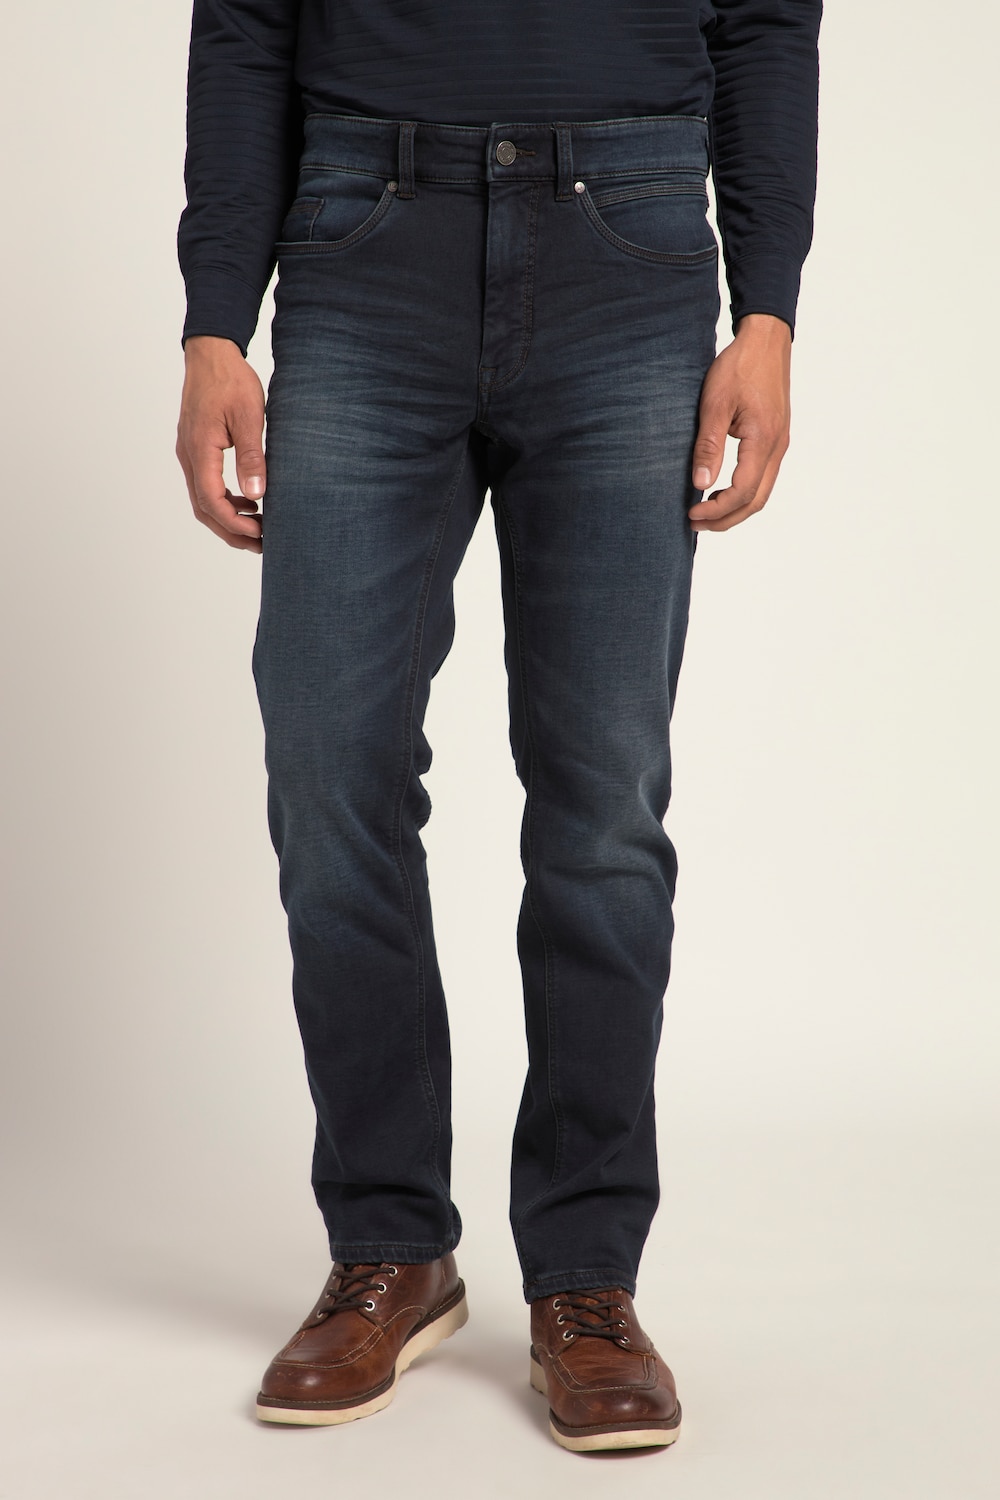 Große Größen Jeans, Herren, blau, Größe: 31, Baumwolle/Polyester, JP1880 von JP1880